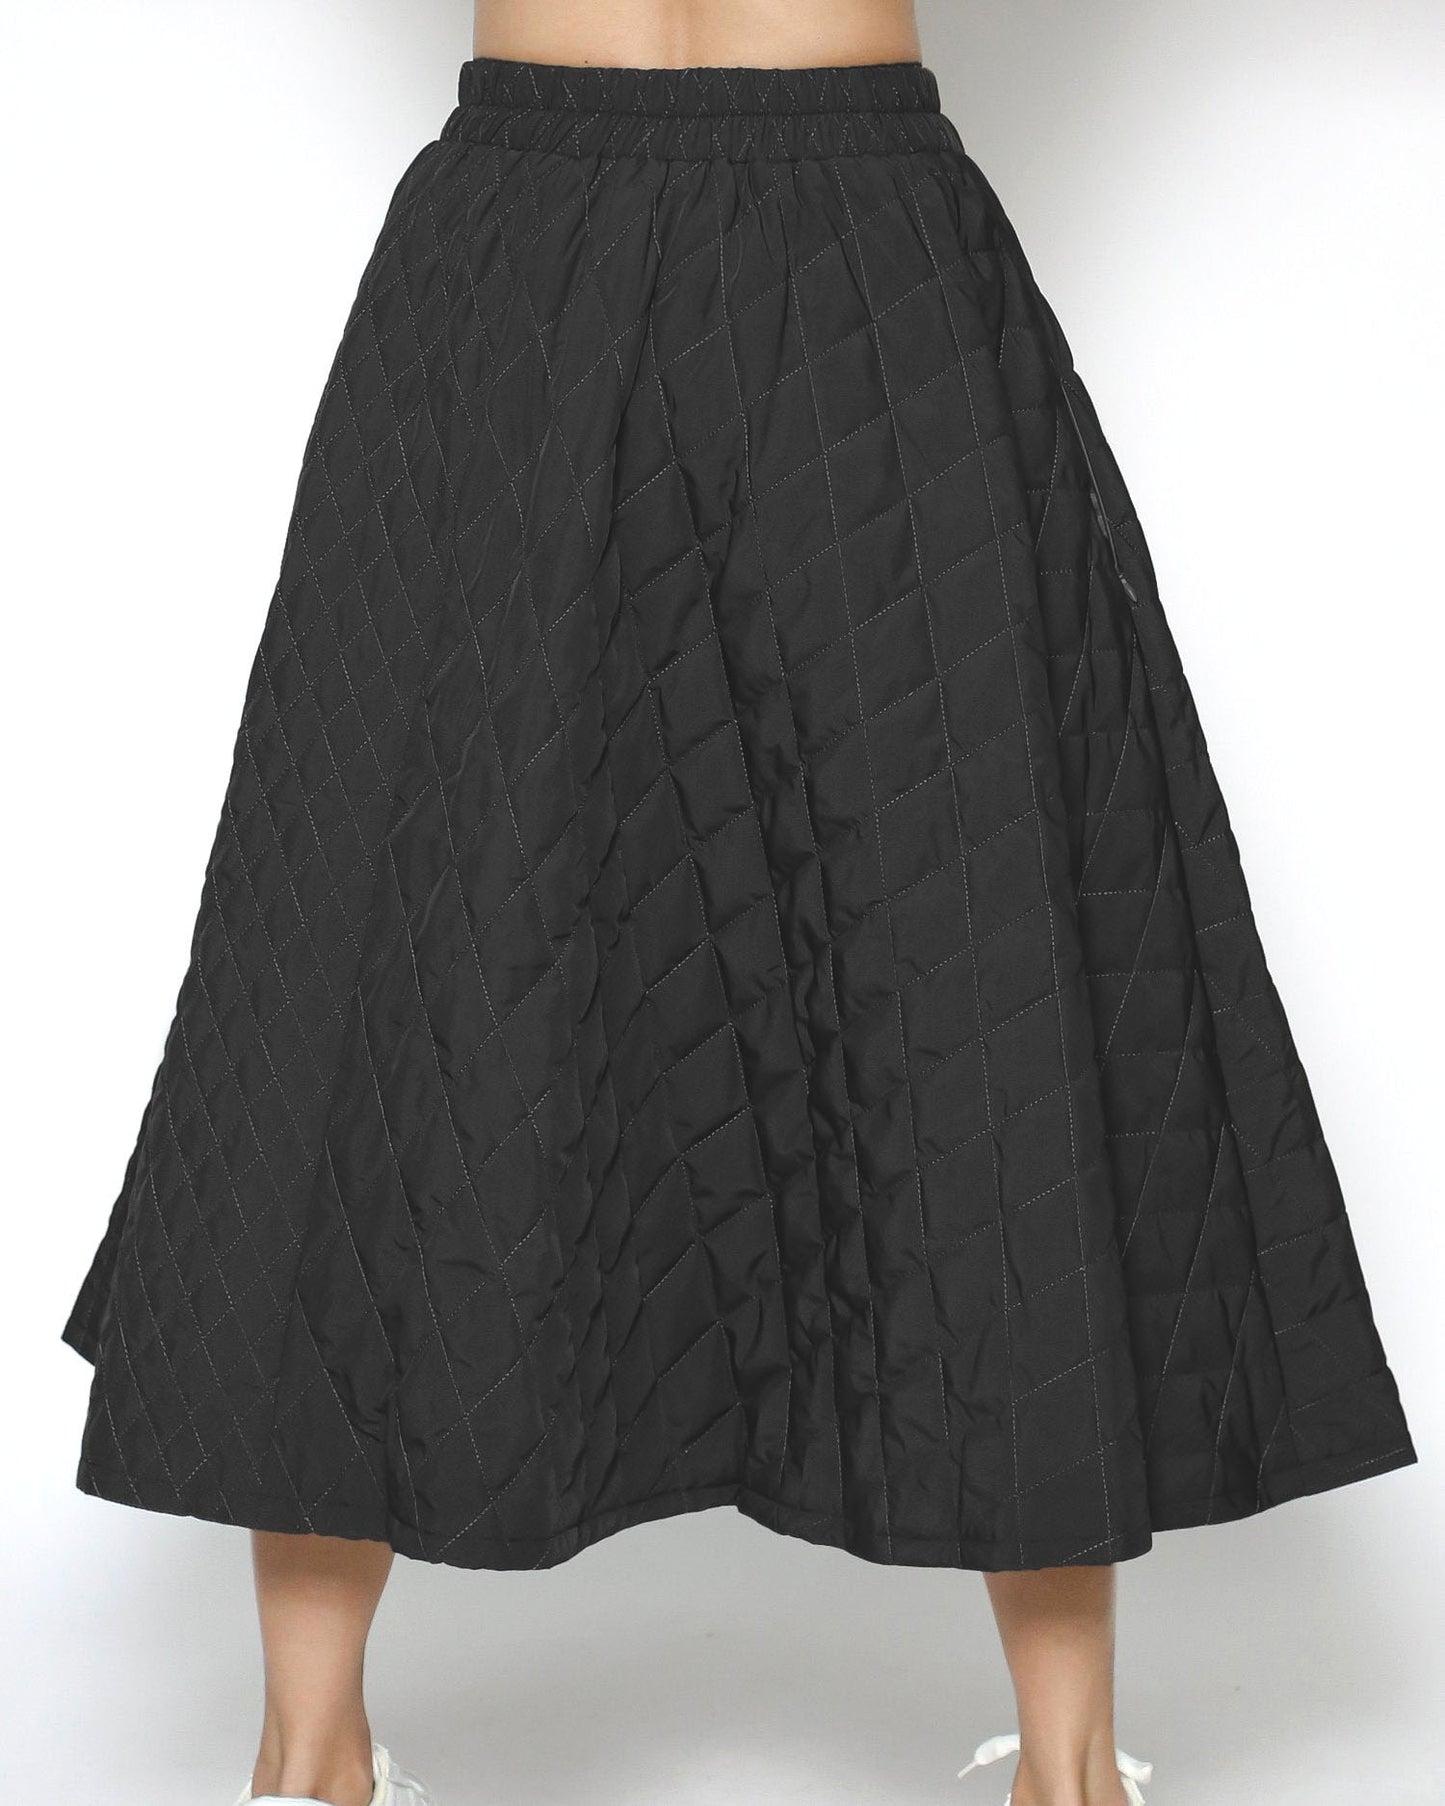 黑色絎縫喇叭裙 *預購*